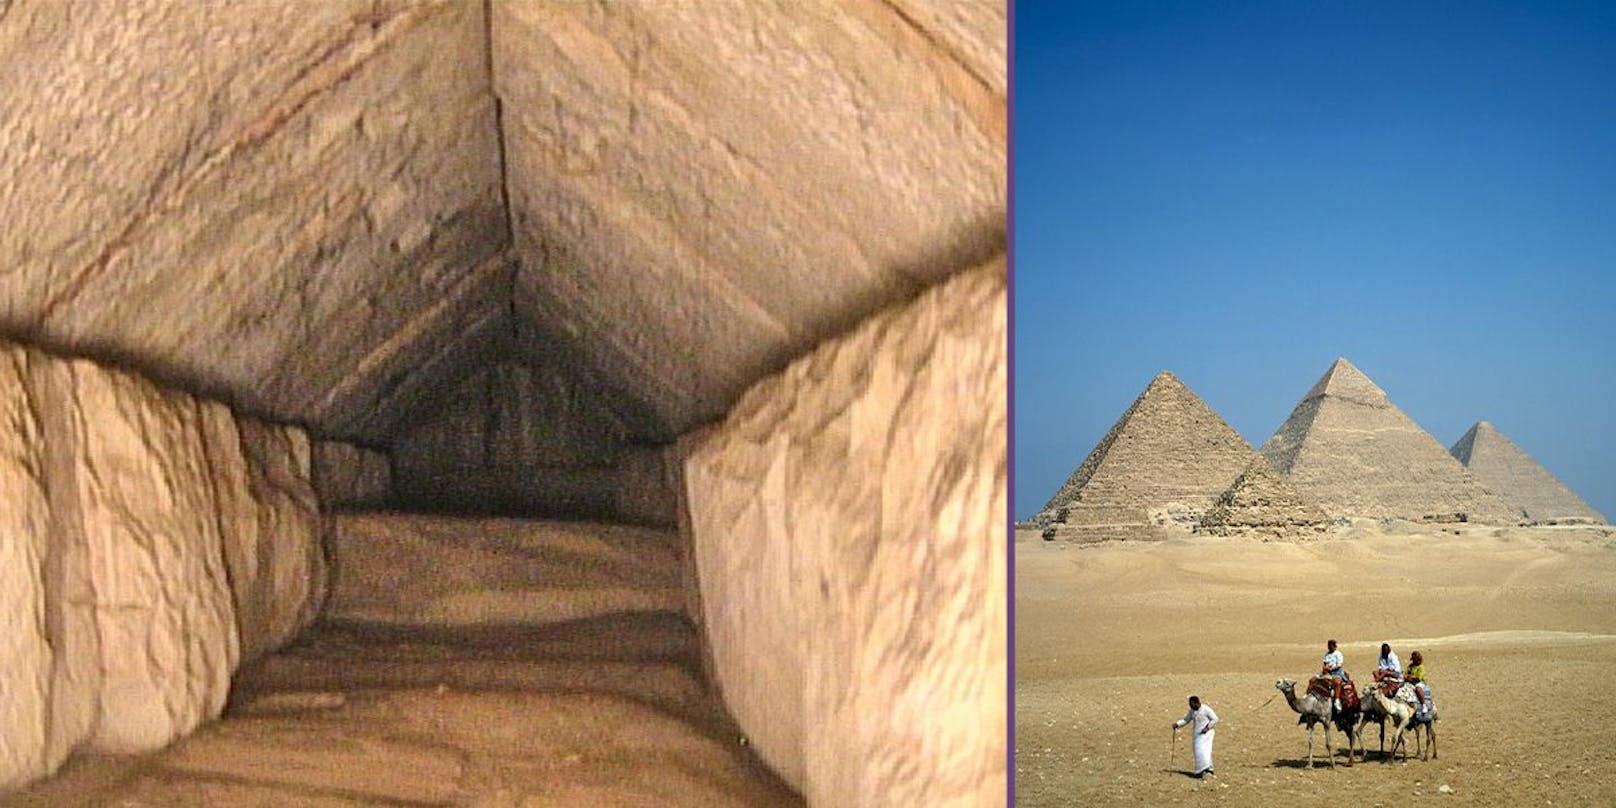 Das Endoskop lieferte die Aufnahmen der versteckten Kammer (li.) in der Cheops-Pyramide. Sie ist eine der "Pyramiden von Gizeh" (re.).